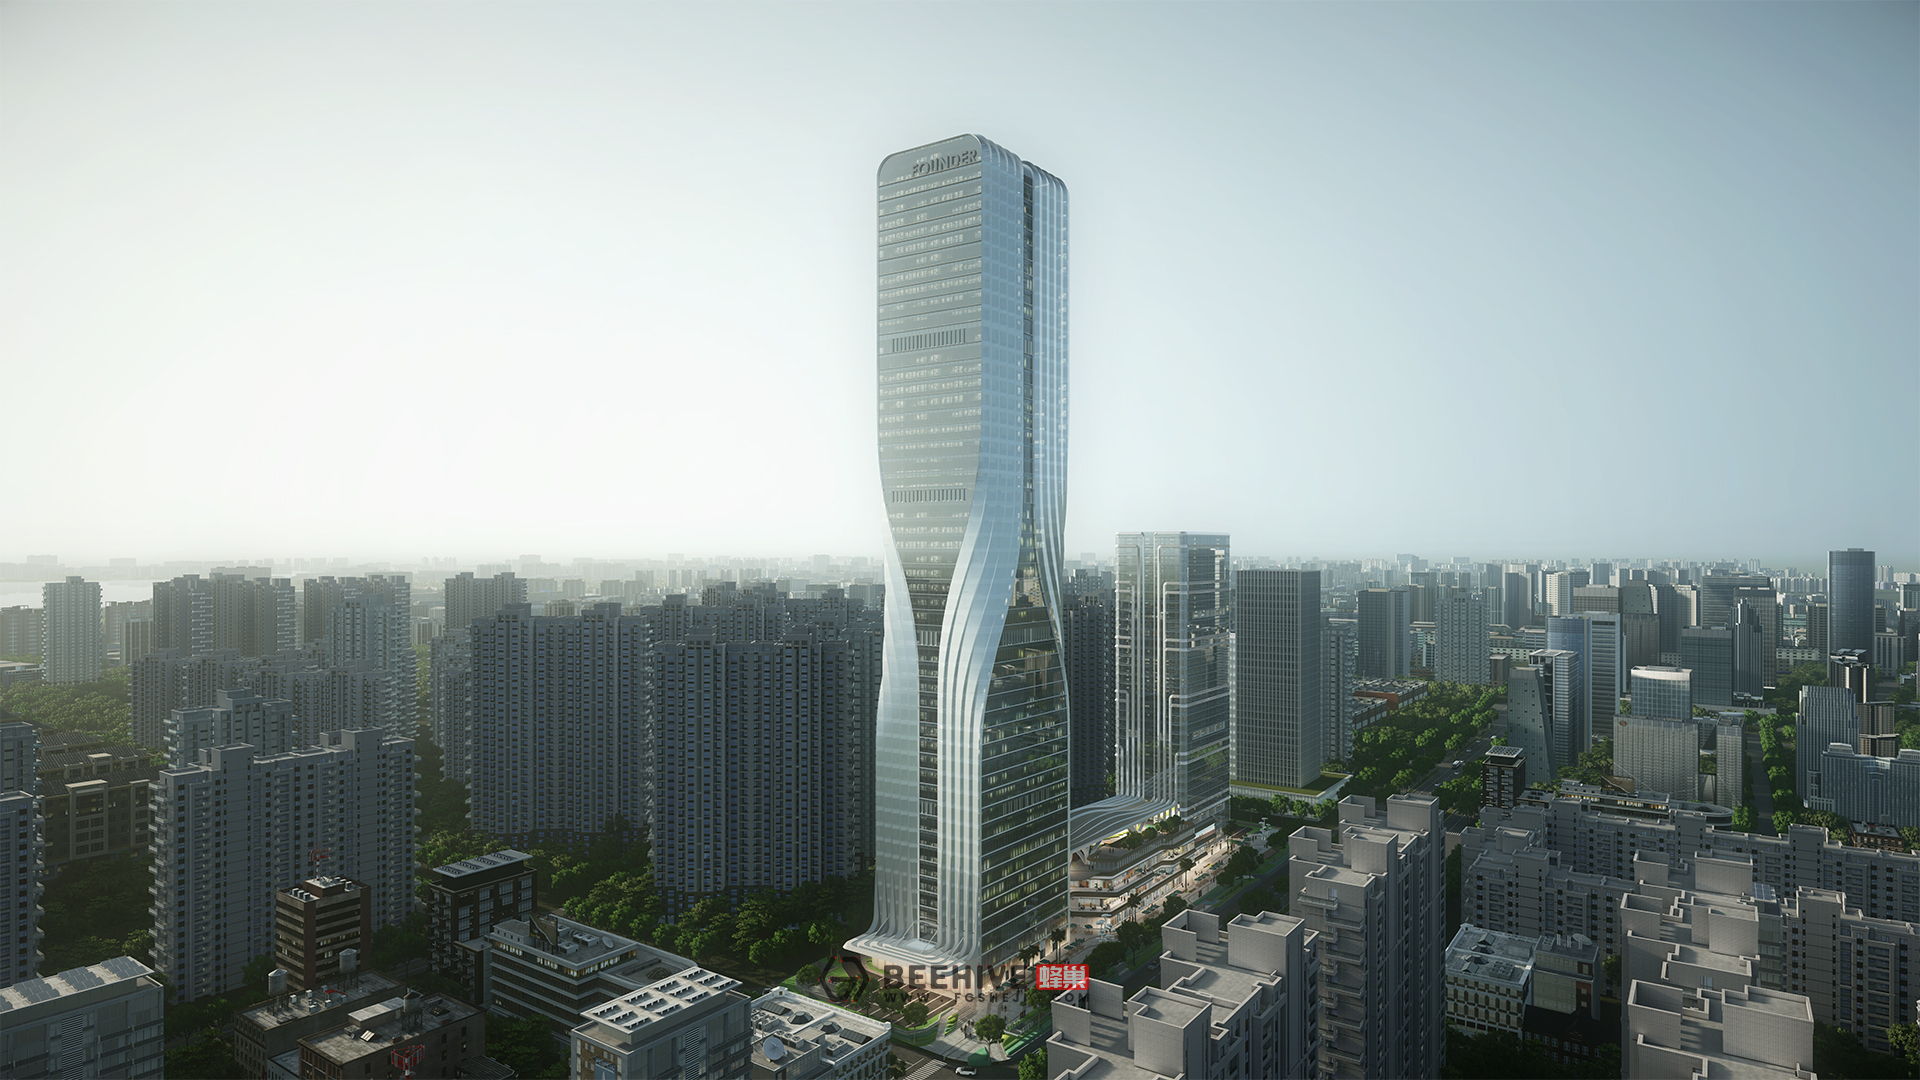 Centro finanziario internazionale fondatore di Wuhan. Design e Architetto del progetto: Aedas. Cliente: Risorse PKU.